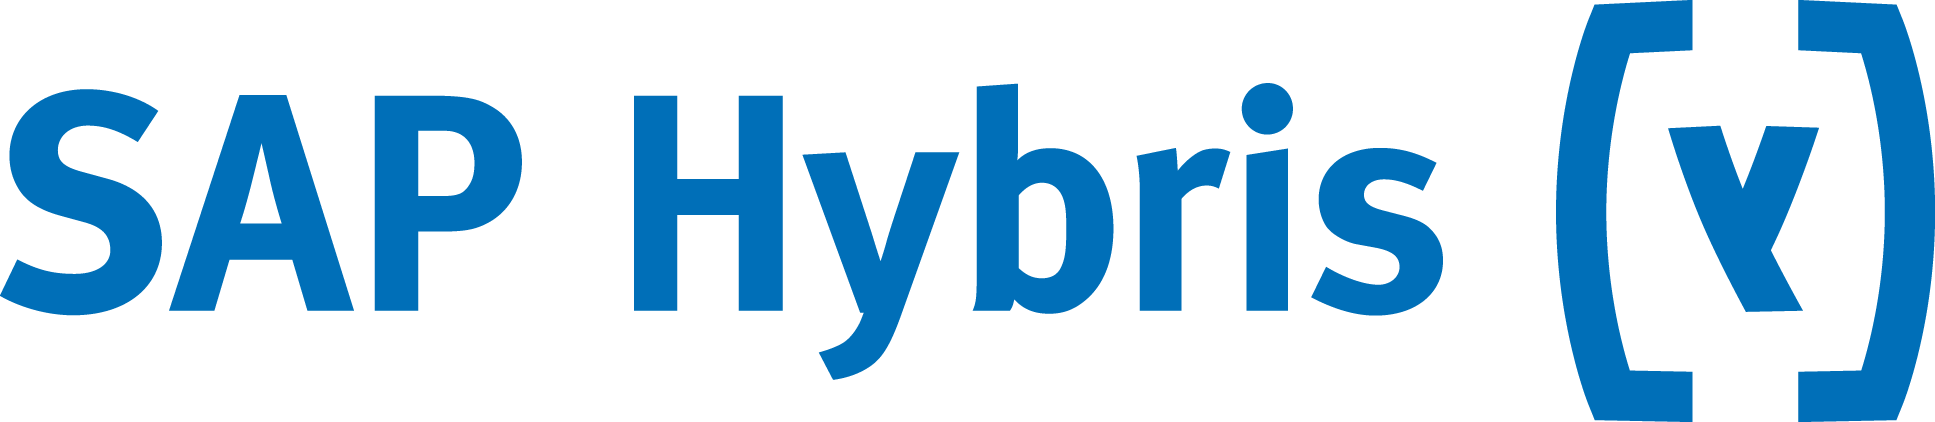 Ingres Logo - Join Actian Ingres with SAP Hybris